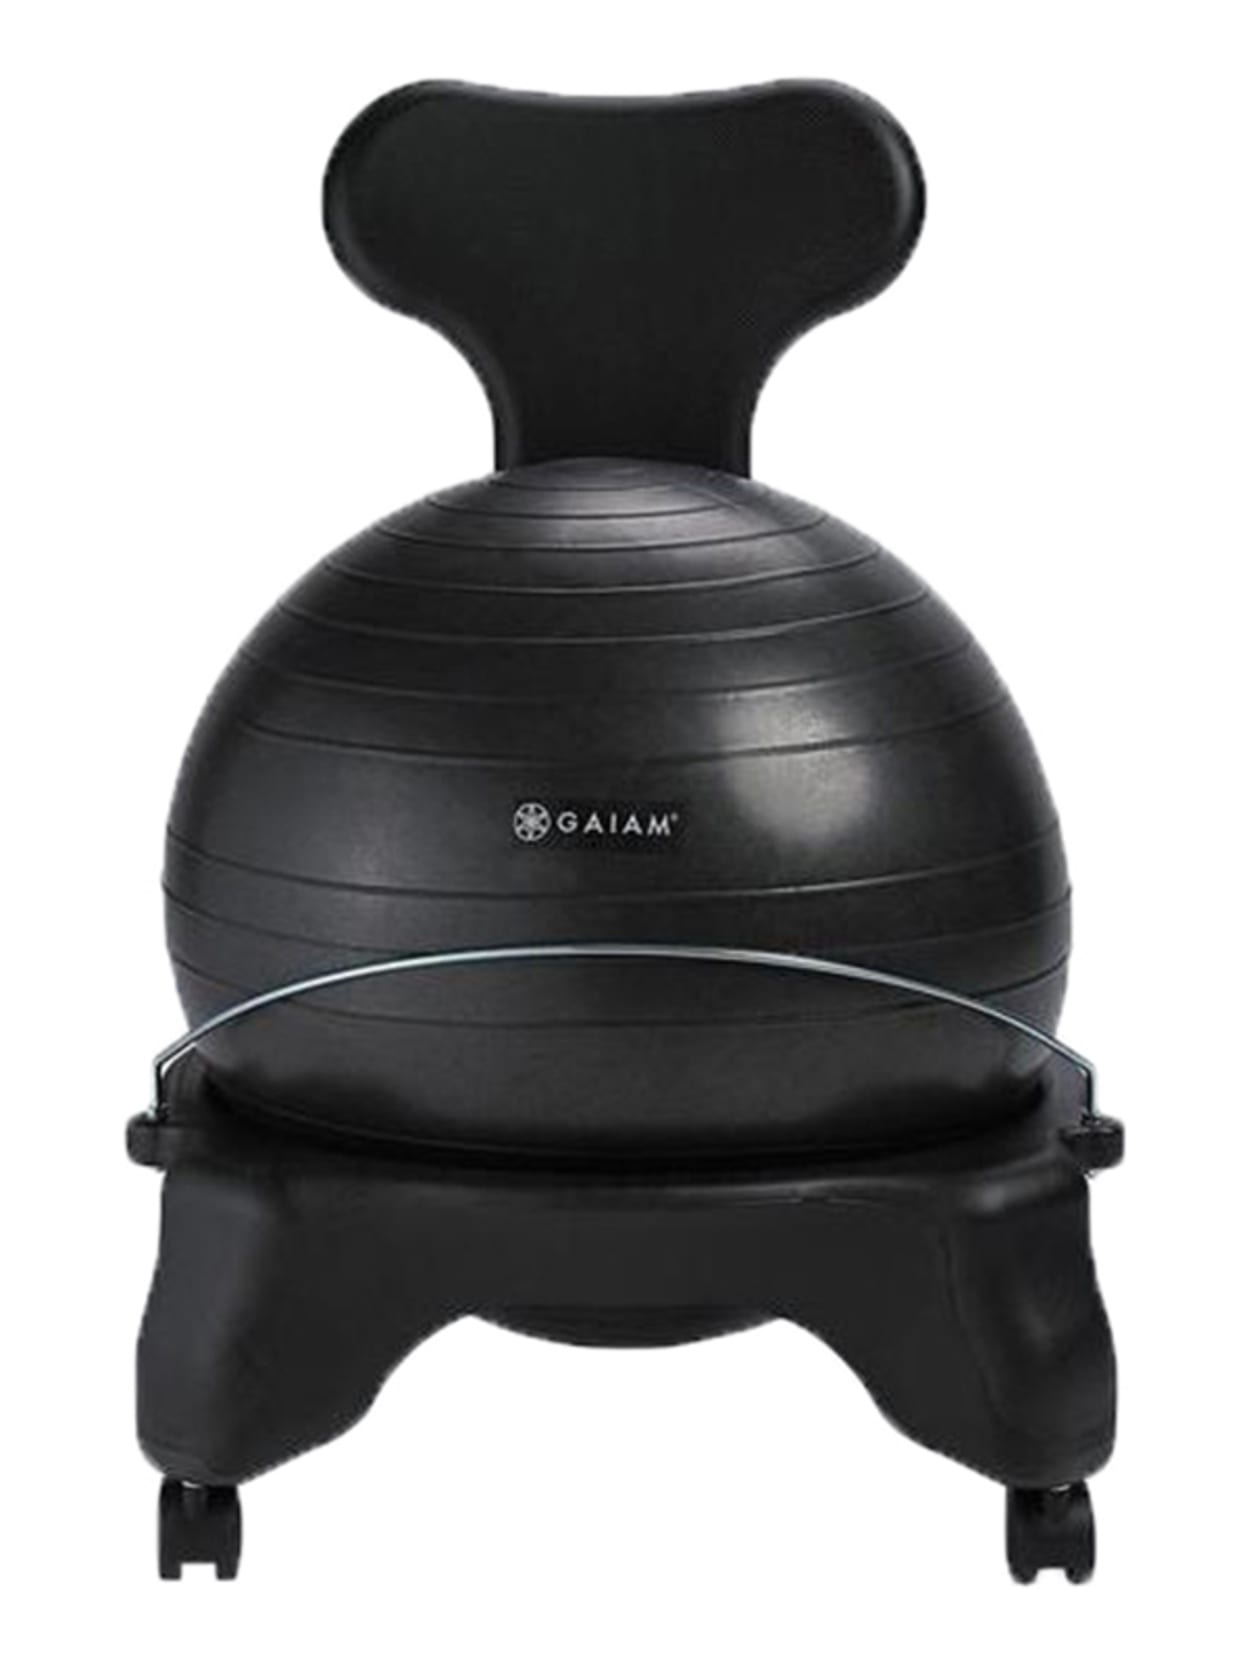 Gaiam Balance Ball Chair Black - Office 